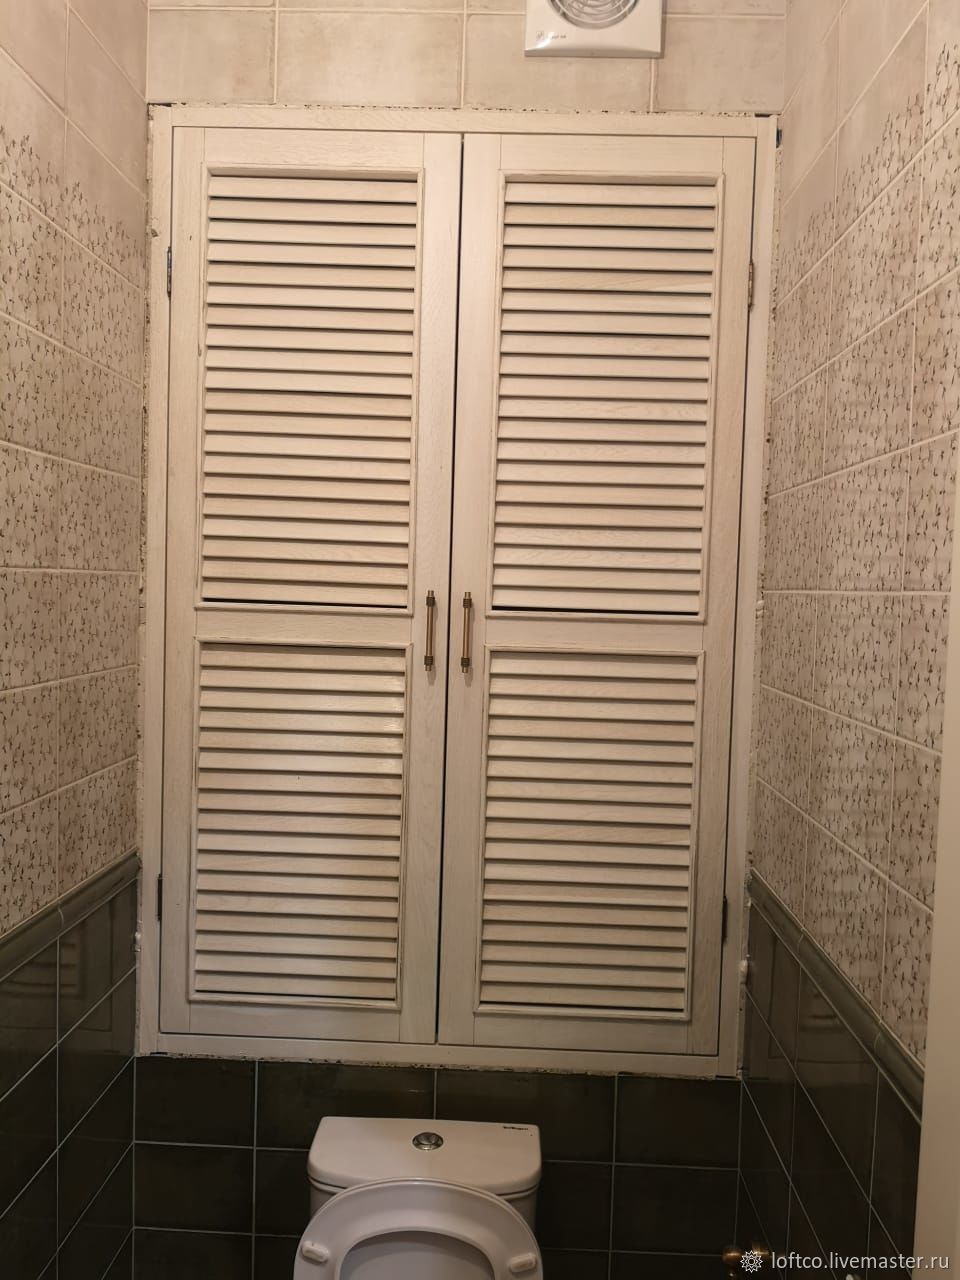 Двери для шкафа над инсталляцией в туалете